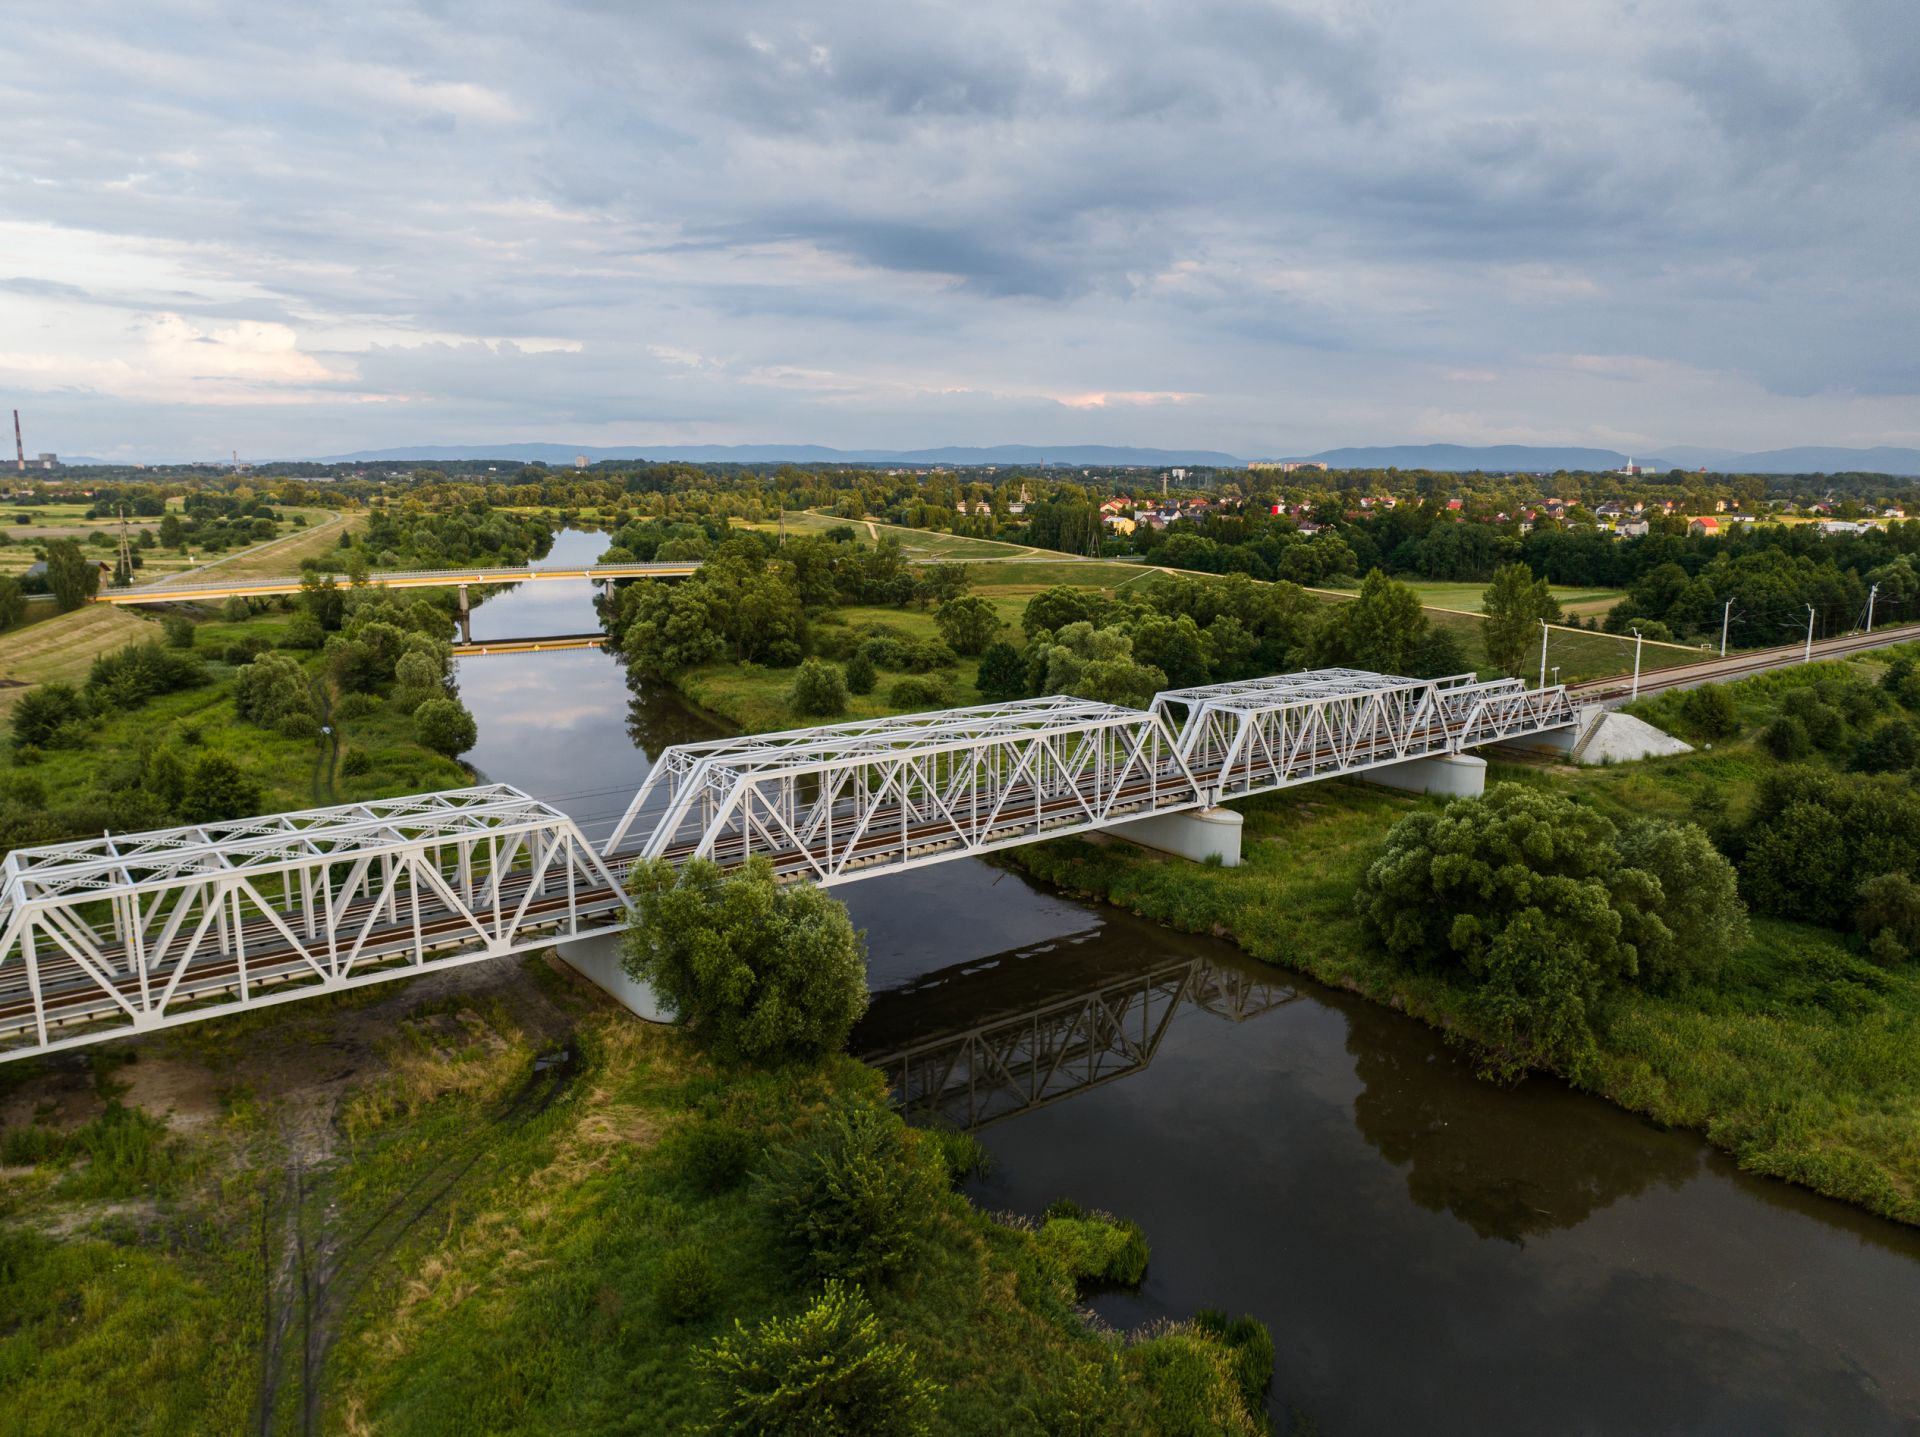 Opracowanie dokumentacji projektowej i wykonanie robót budowlano-montażowych na linii kolejowej nr 93 na odcinku Trzebinia – Oświęcim.